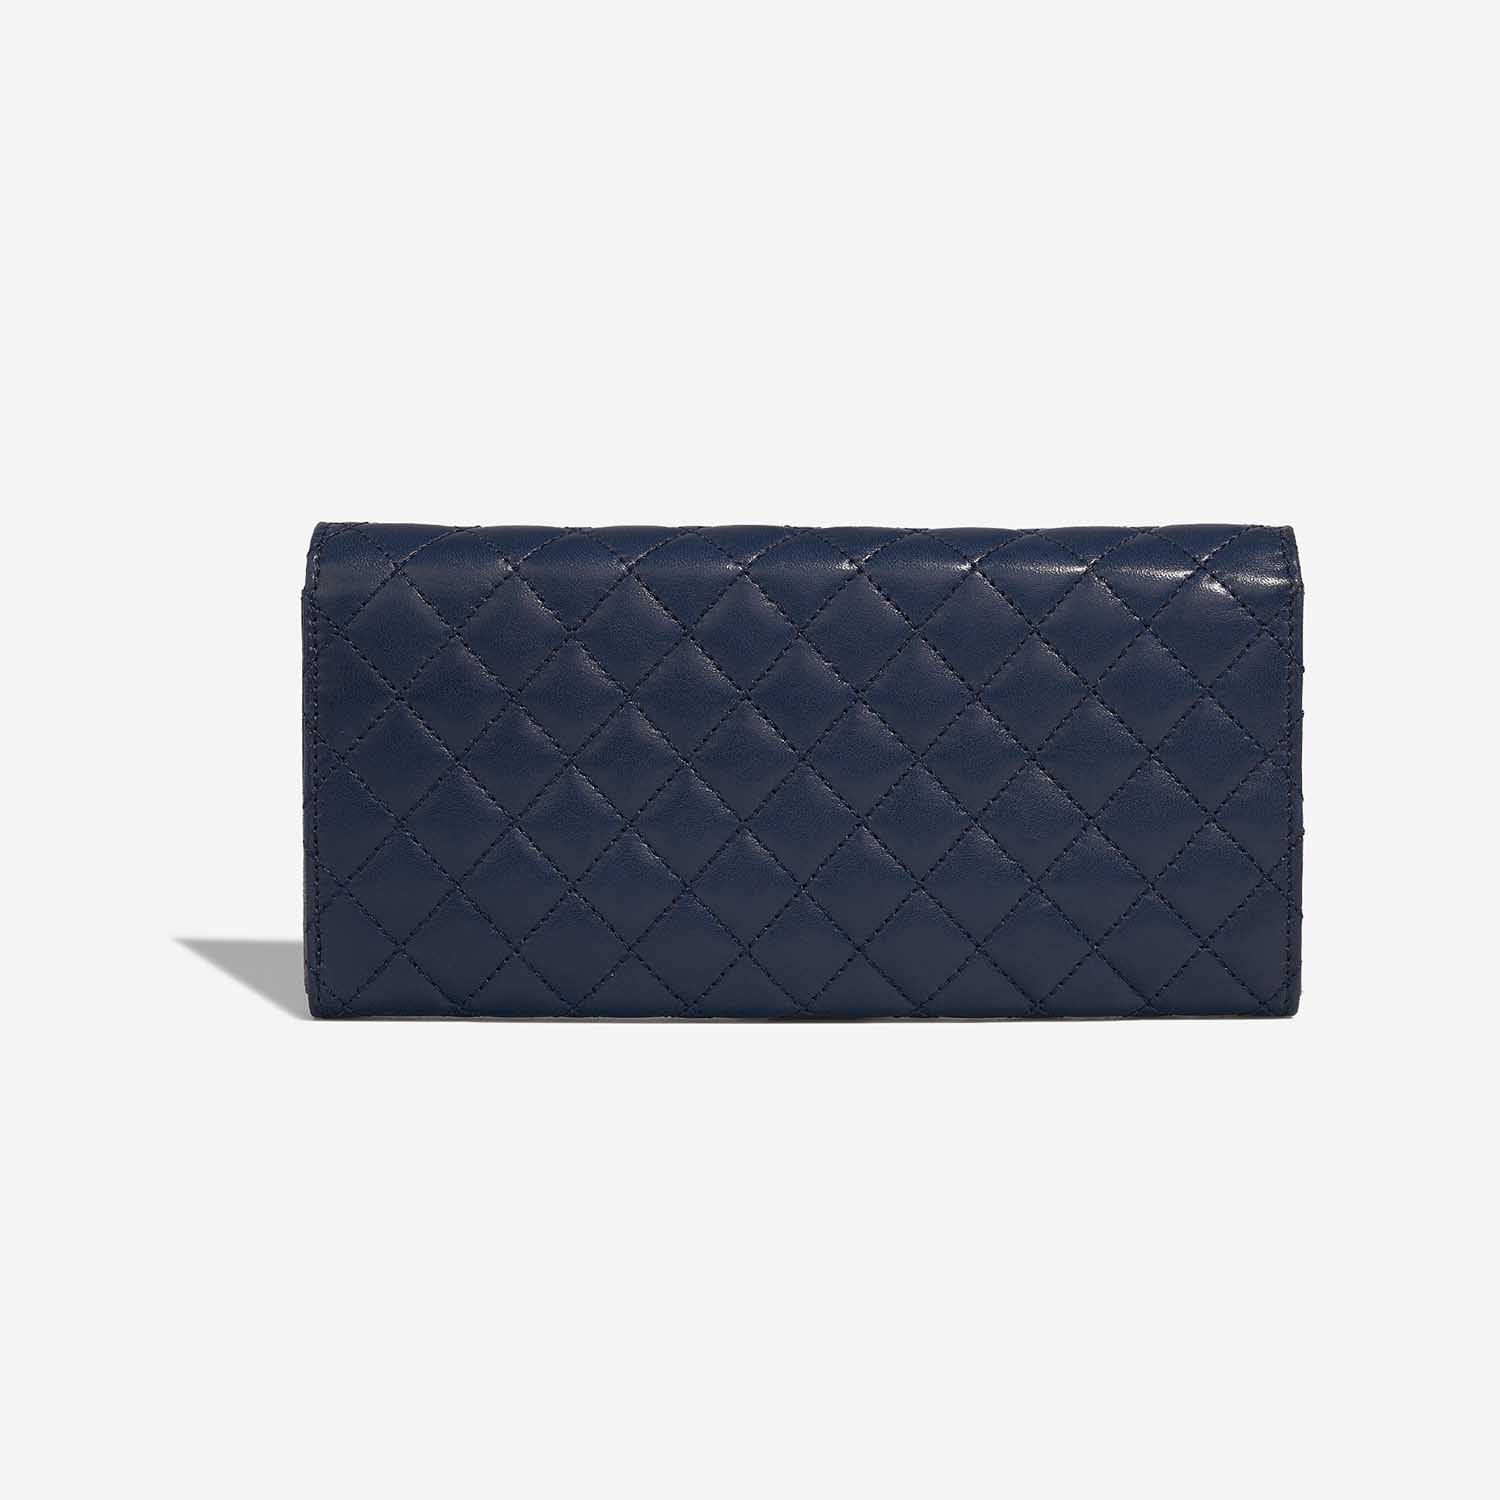 Chanel Timeless Medium DarkBlue 5B S | Verkaufen Sie Ihre Designer-Tasche auf Saclab.com